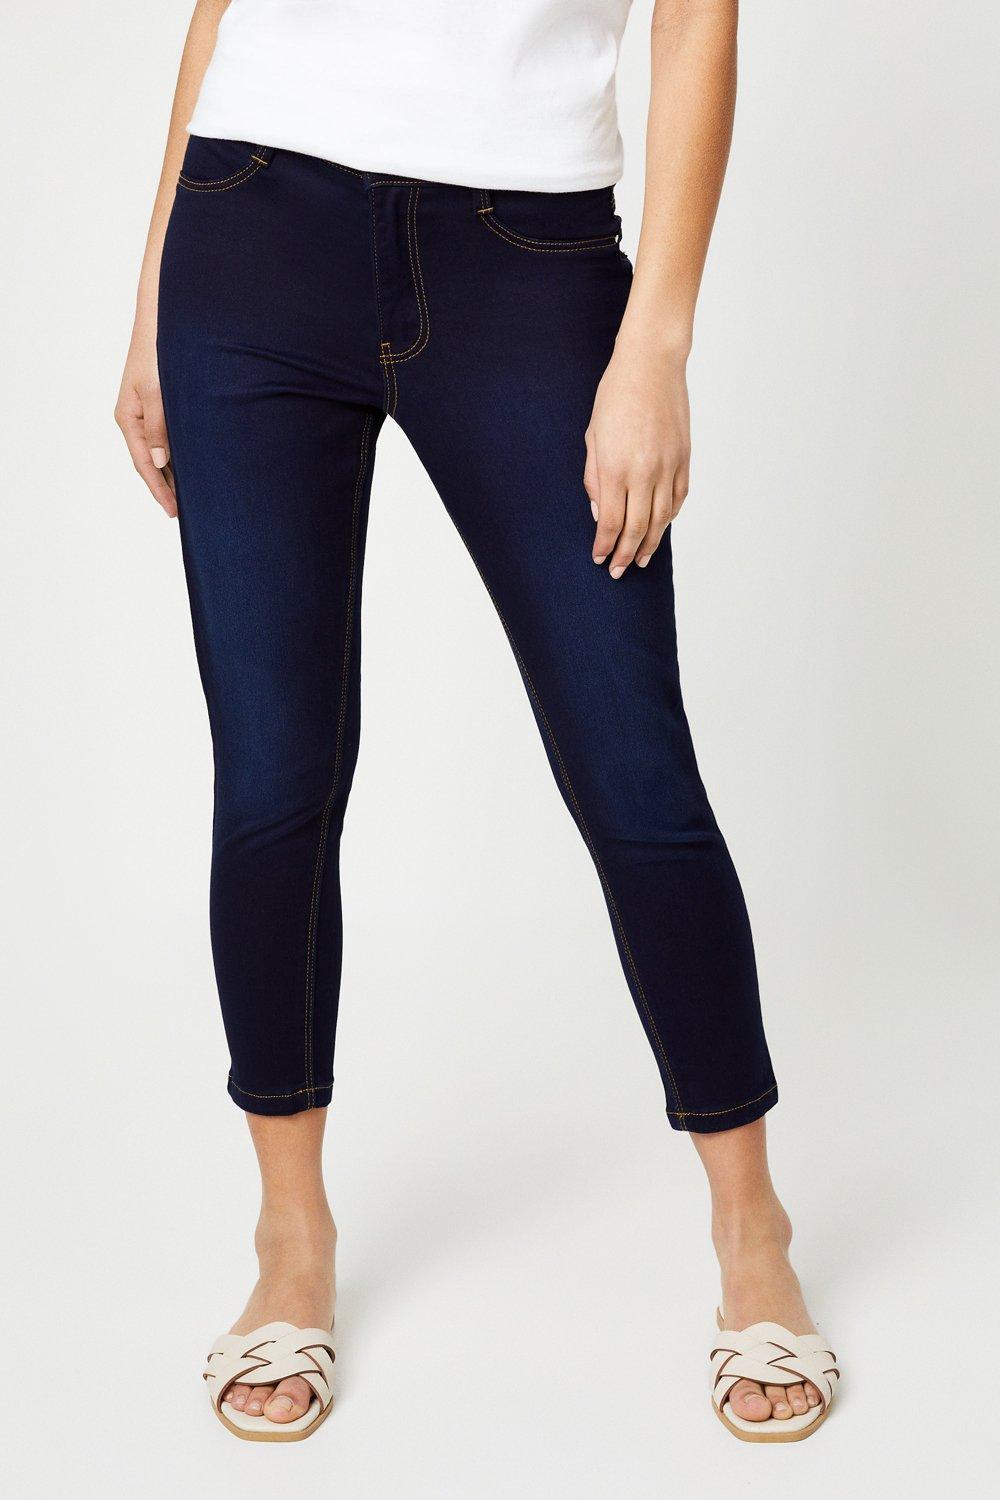 Women’s Petite Skinny Ankle Grazer Jeans - indigo - 18